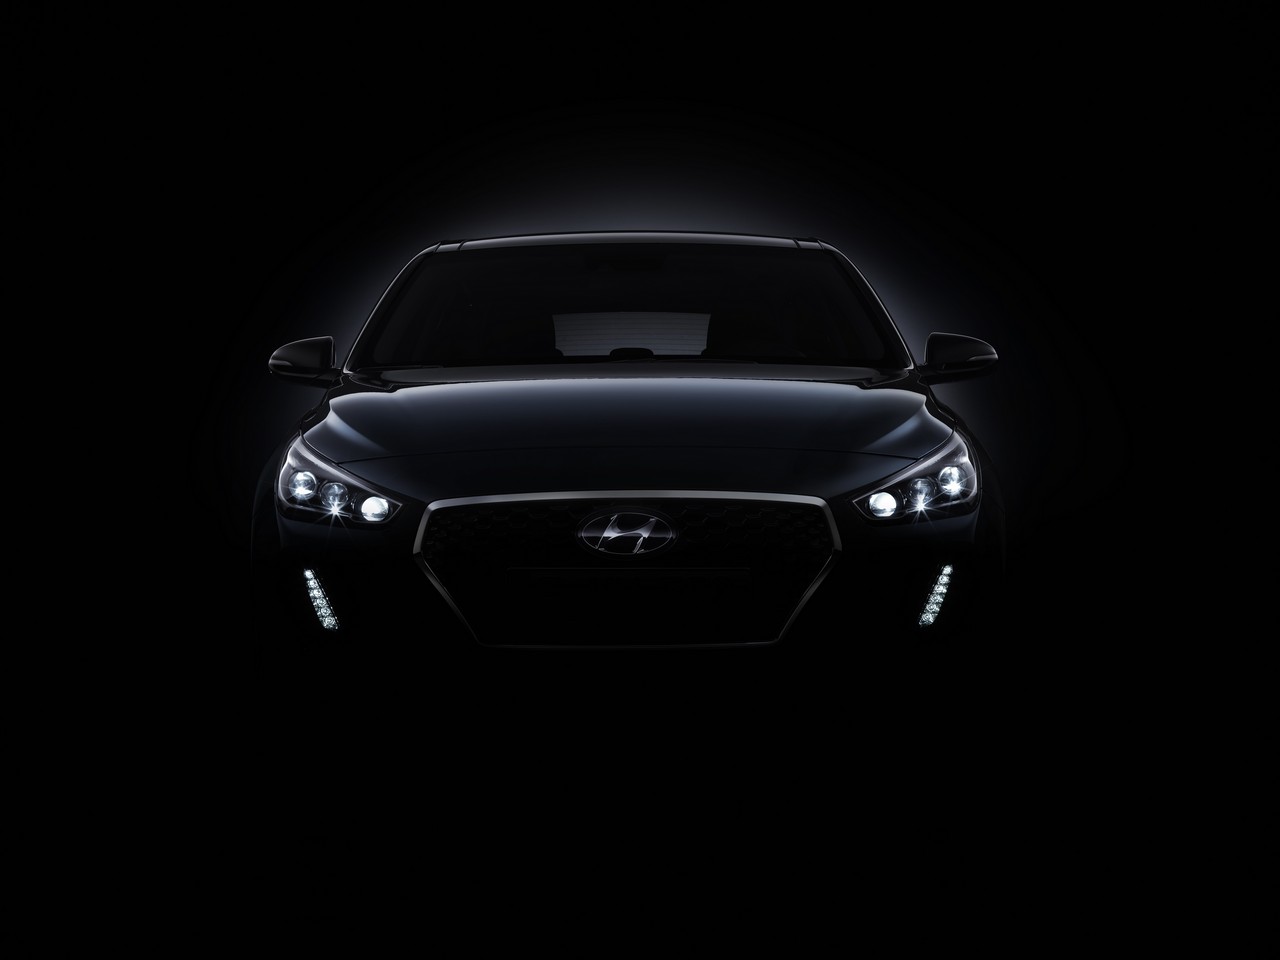 Los nuevos detalles del Hyundai i30 a la vista